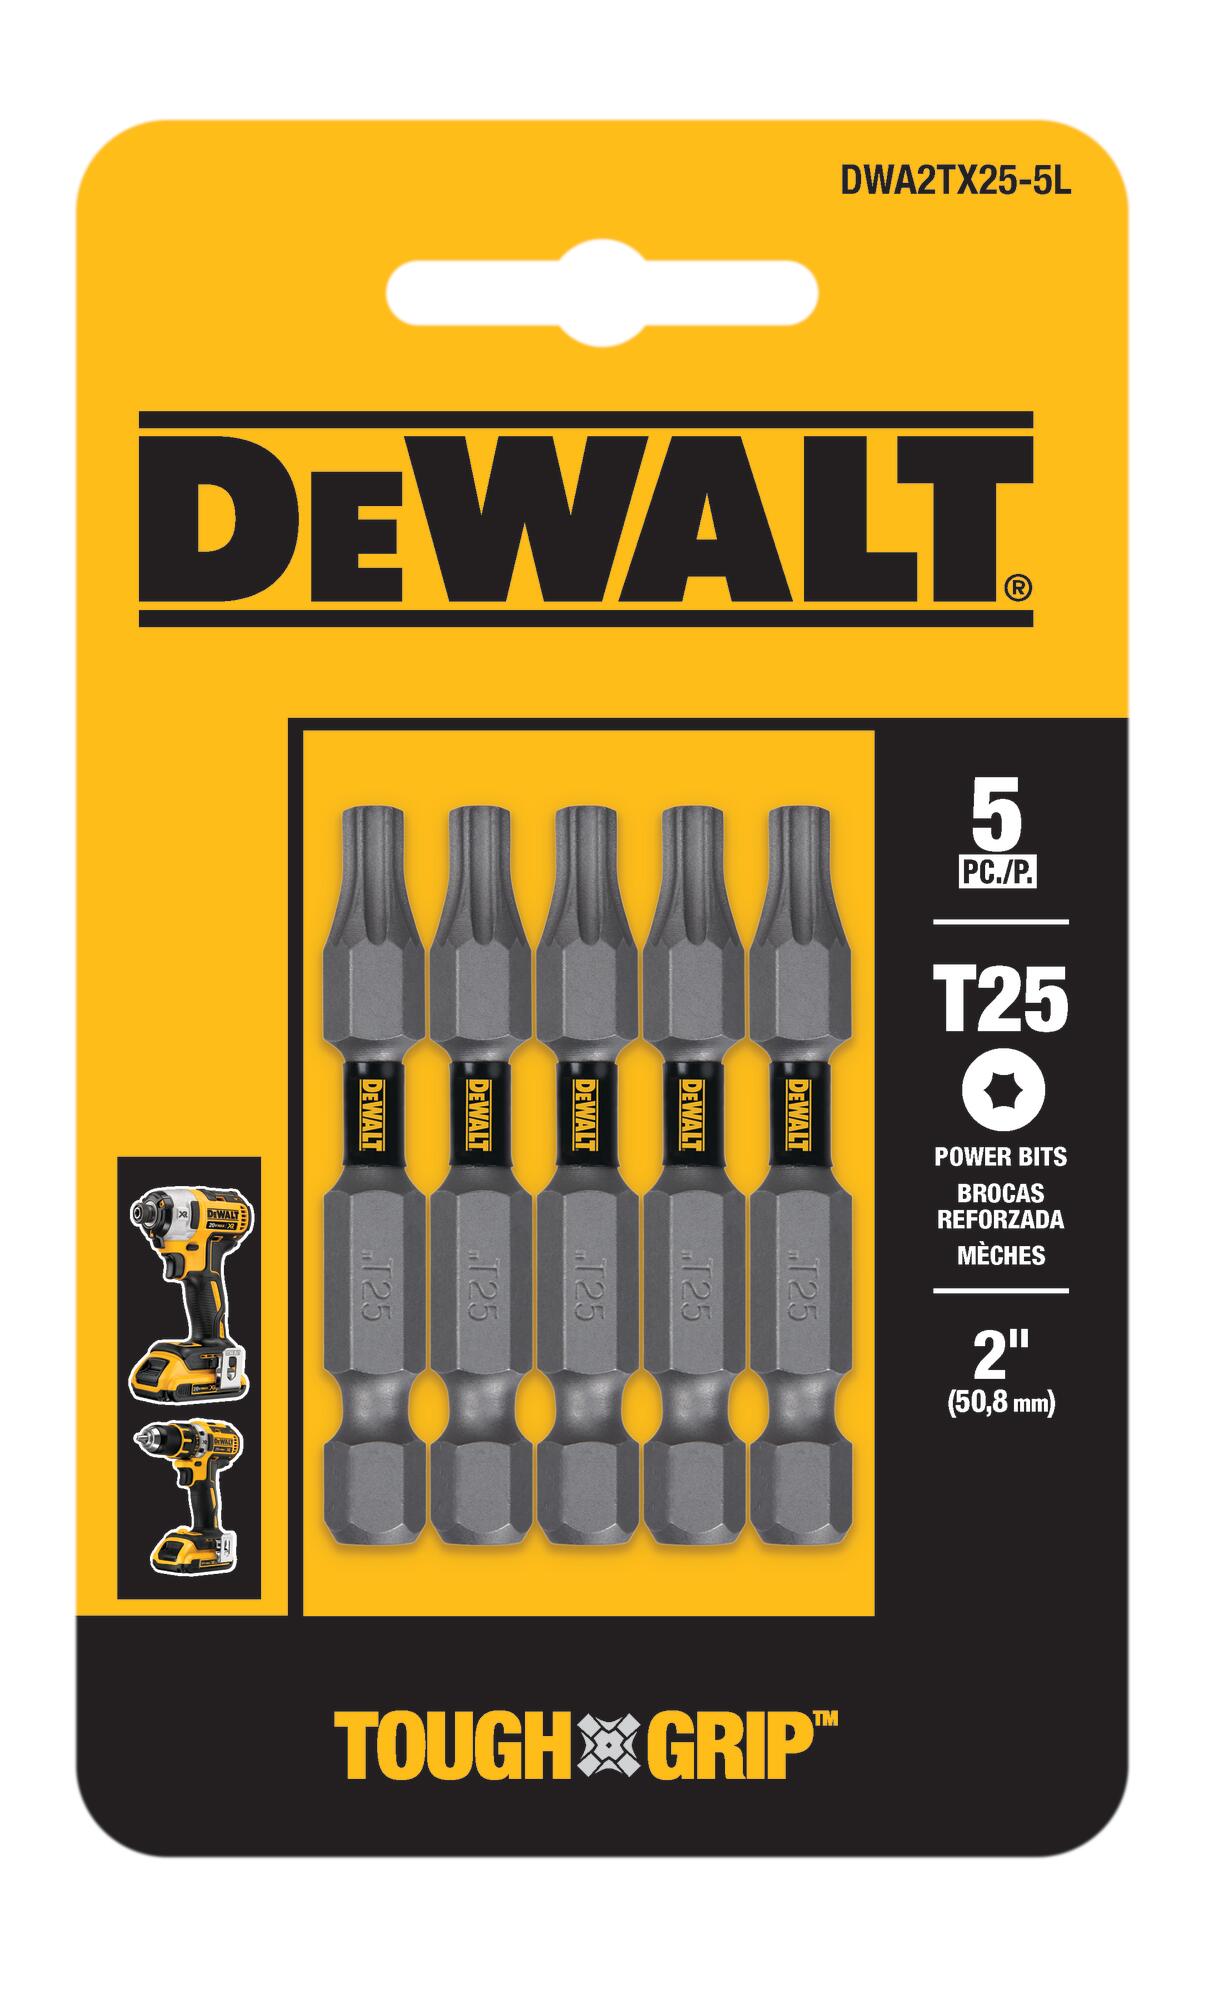 DEWALT MAXFIT 2 in. #25 Torx Bit (5-Piece) DWA2TX25MF5 - The Home Depot